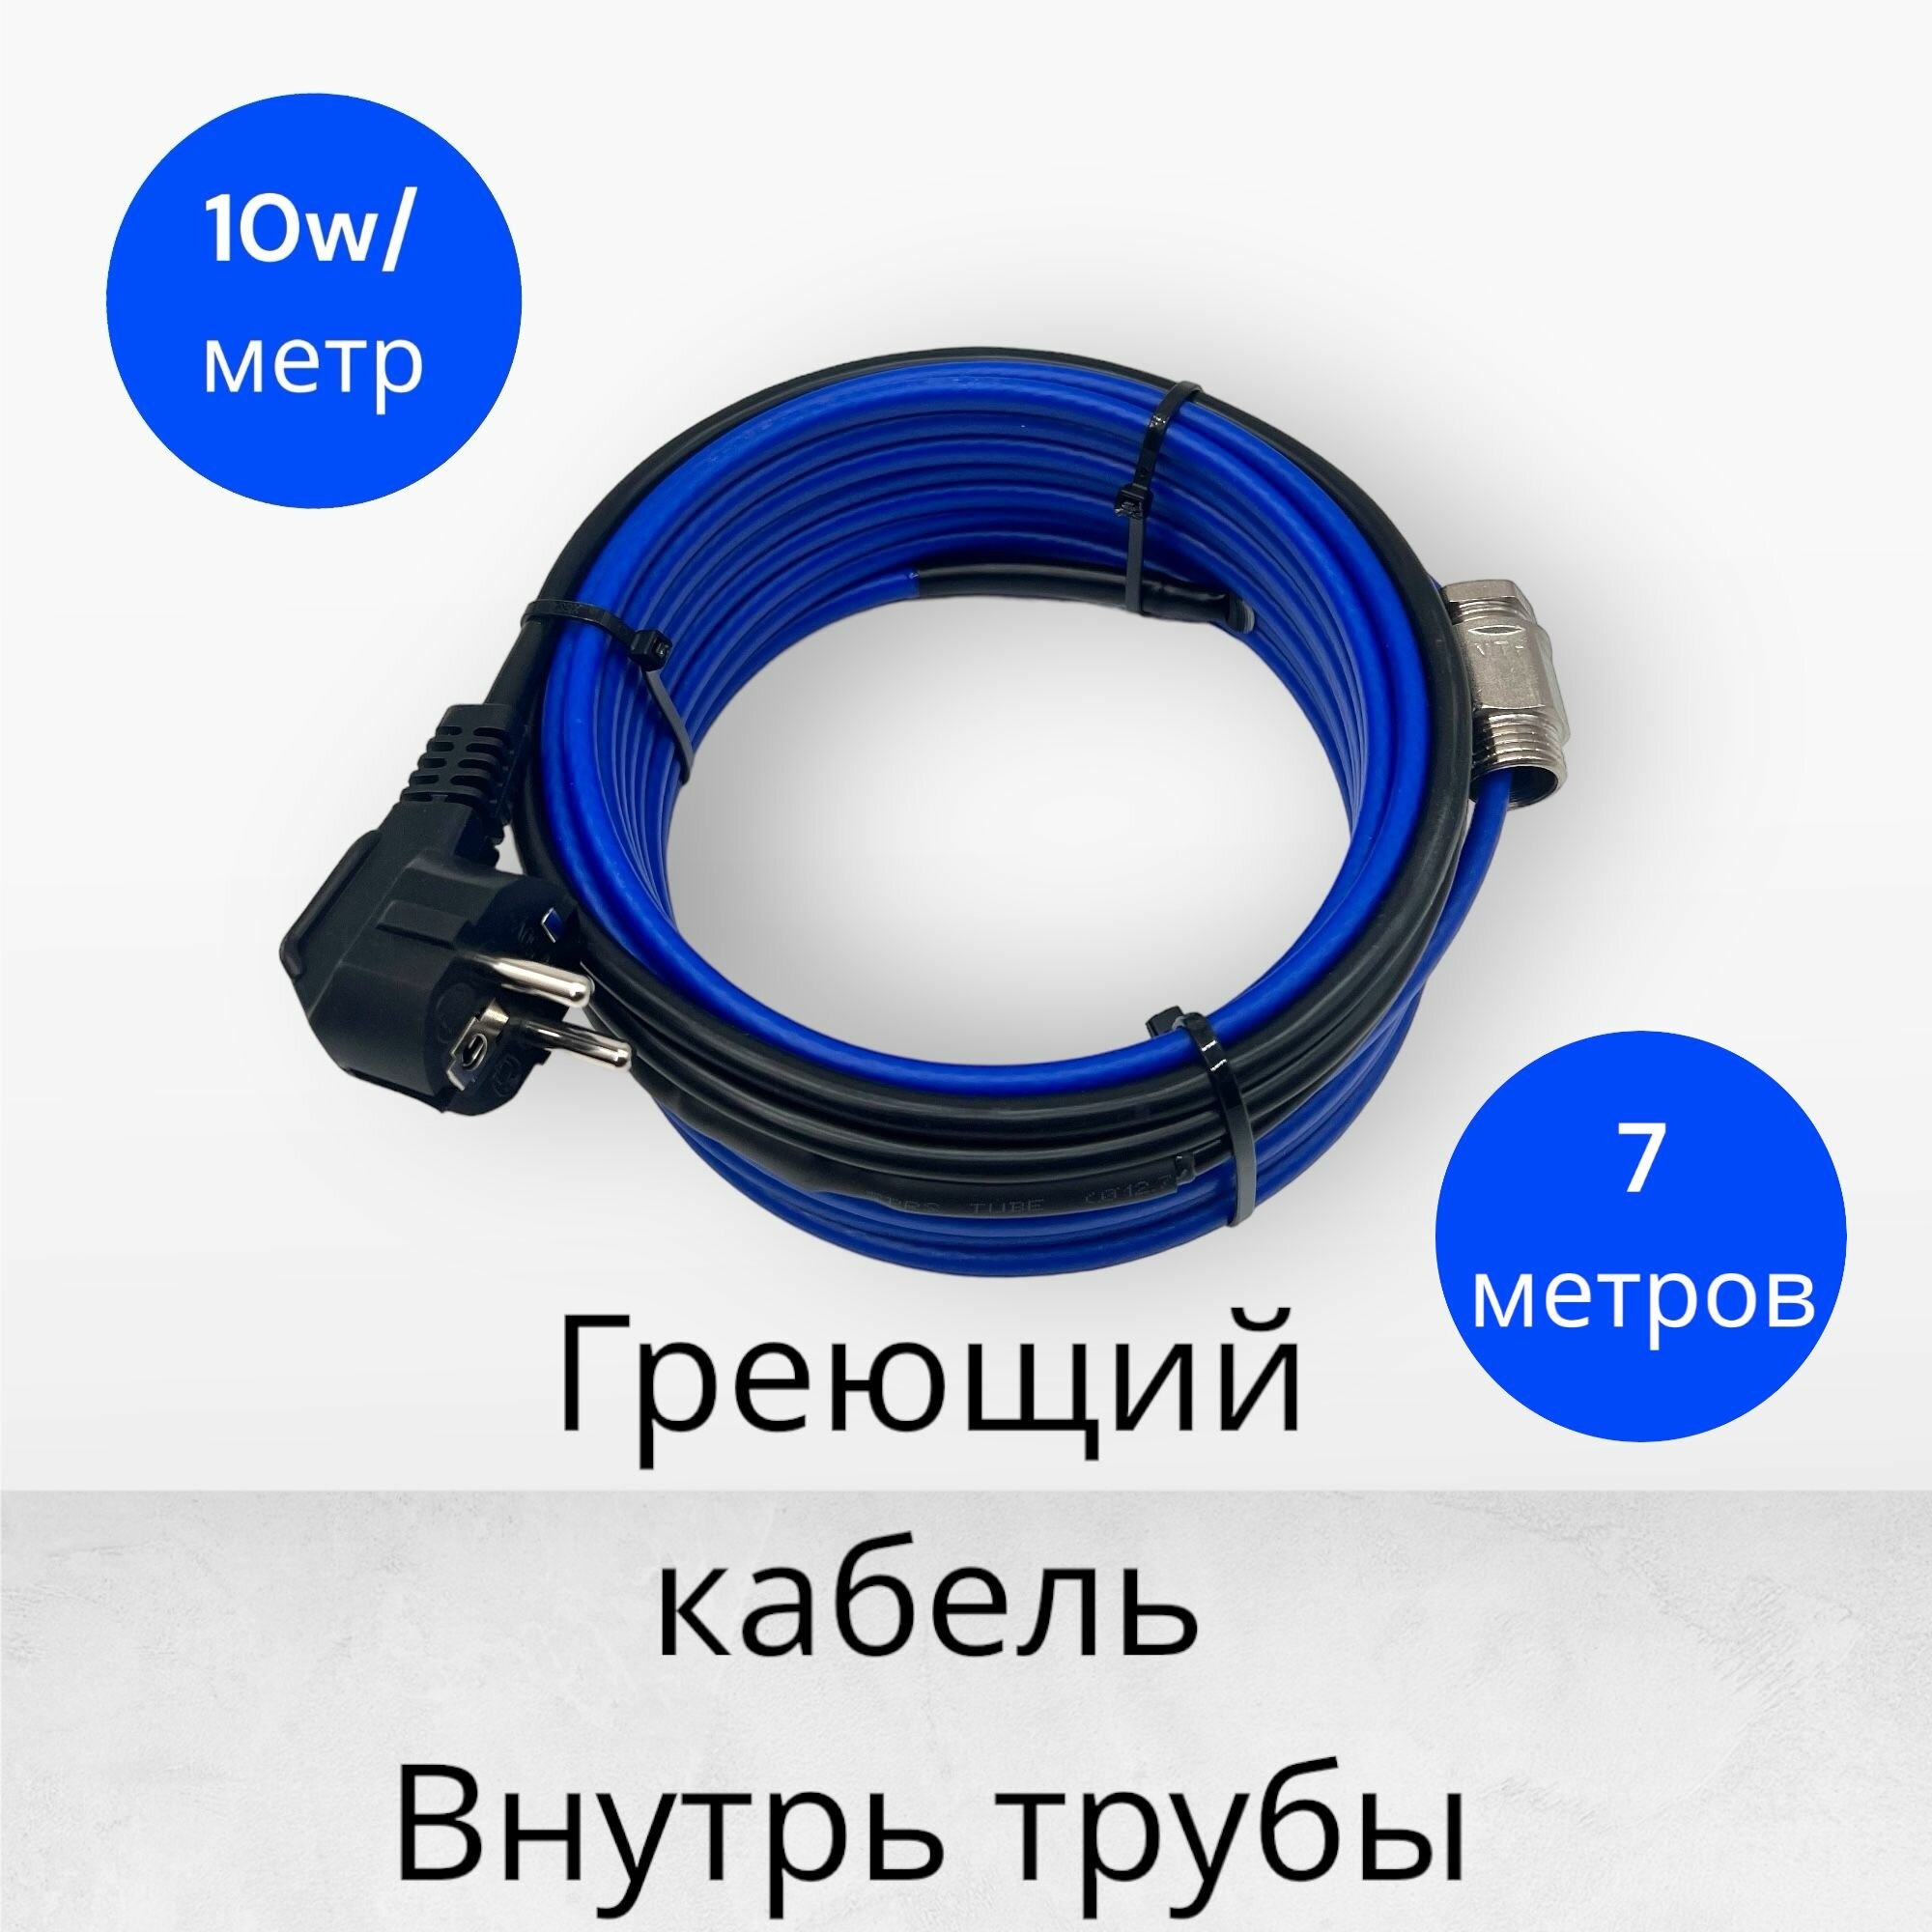 Греющий саморегулирующийся кабель внутрь трубы TM PRO - 10Вт/м (7м. комплект)